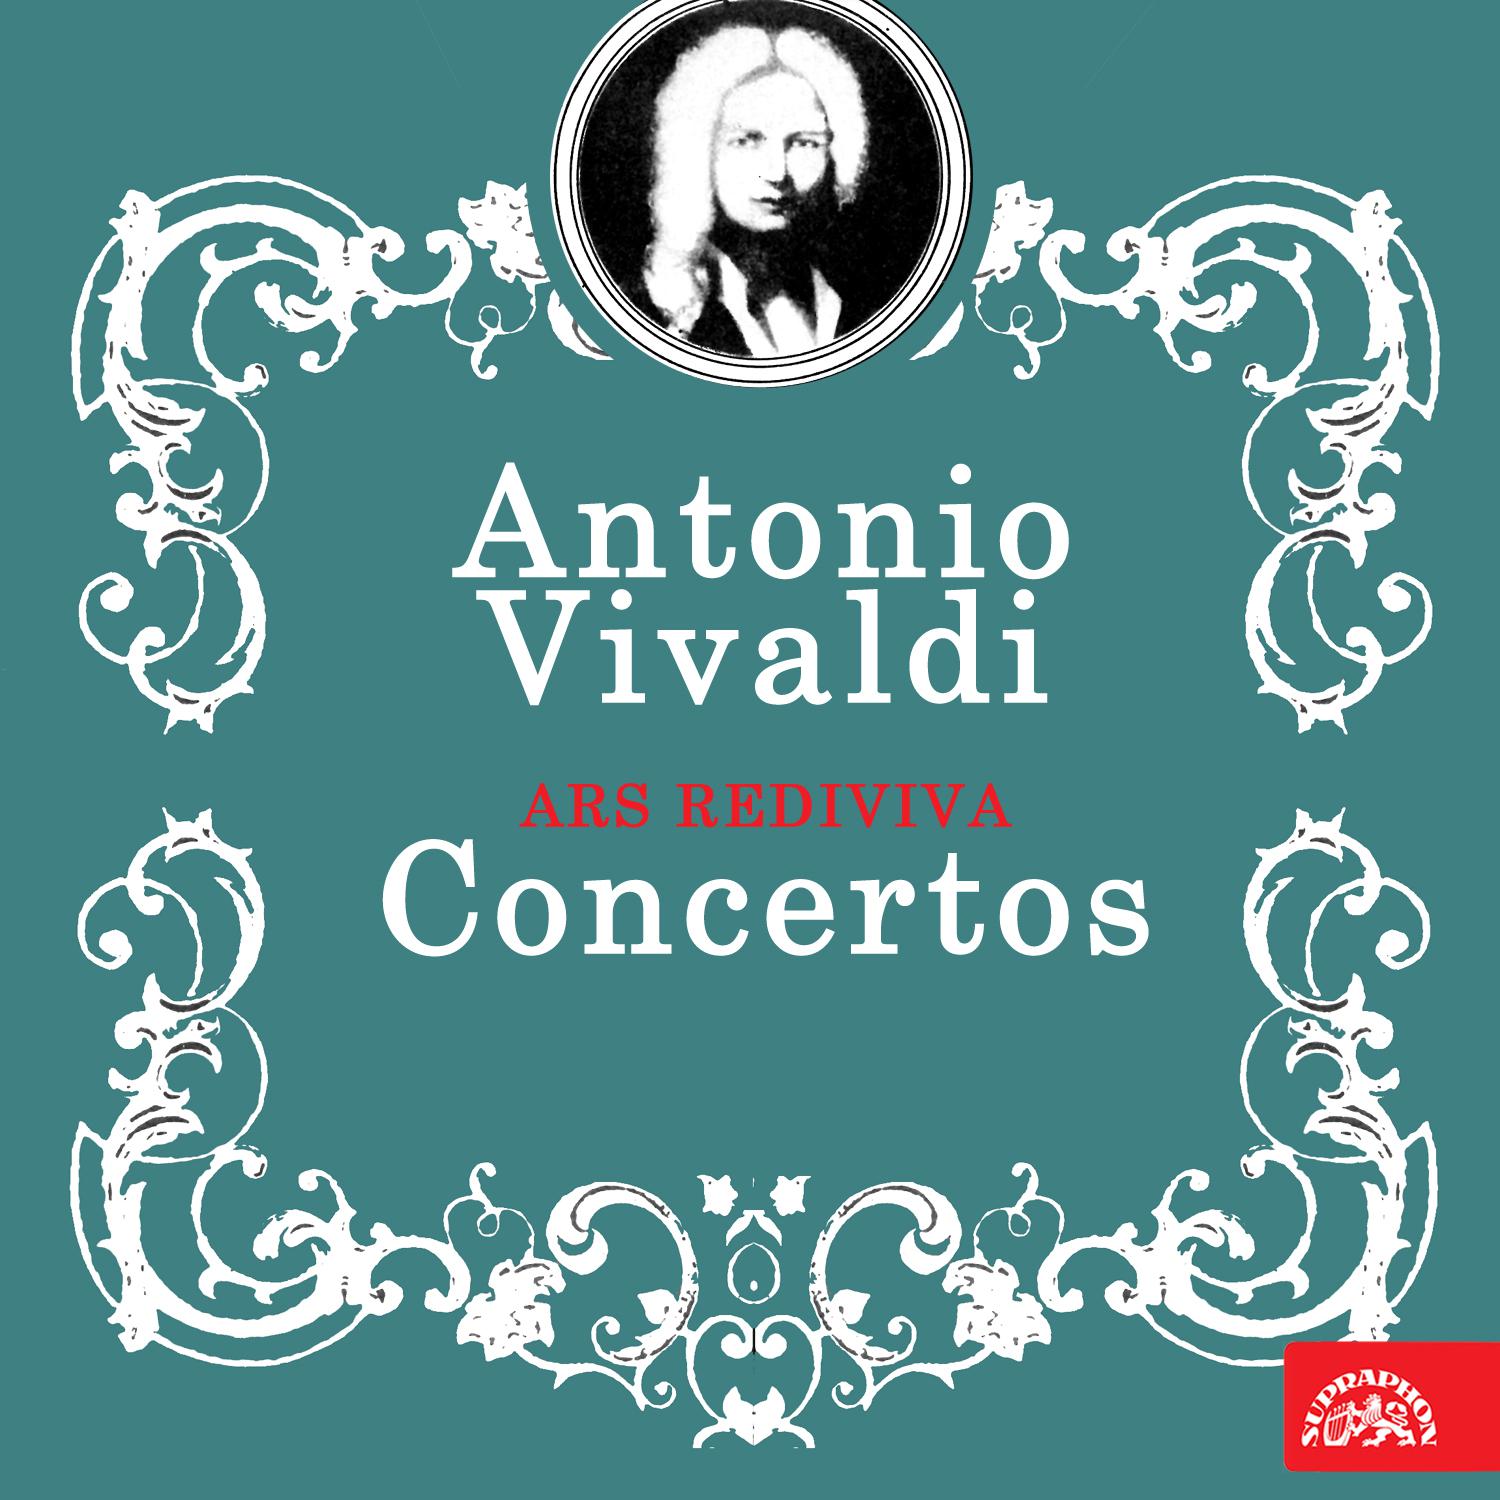 Ars rediviva - Concerto for Flute, Oboe, Violin, Bassoon and Basso Continuo in C Major:III. Allegro molto